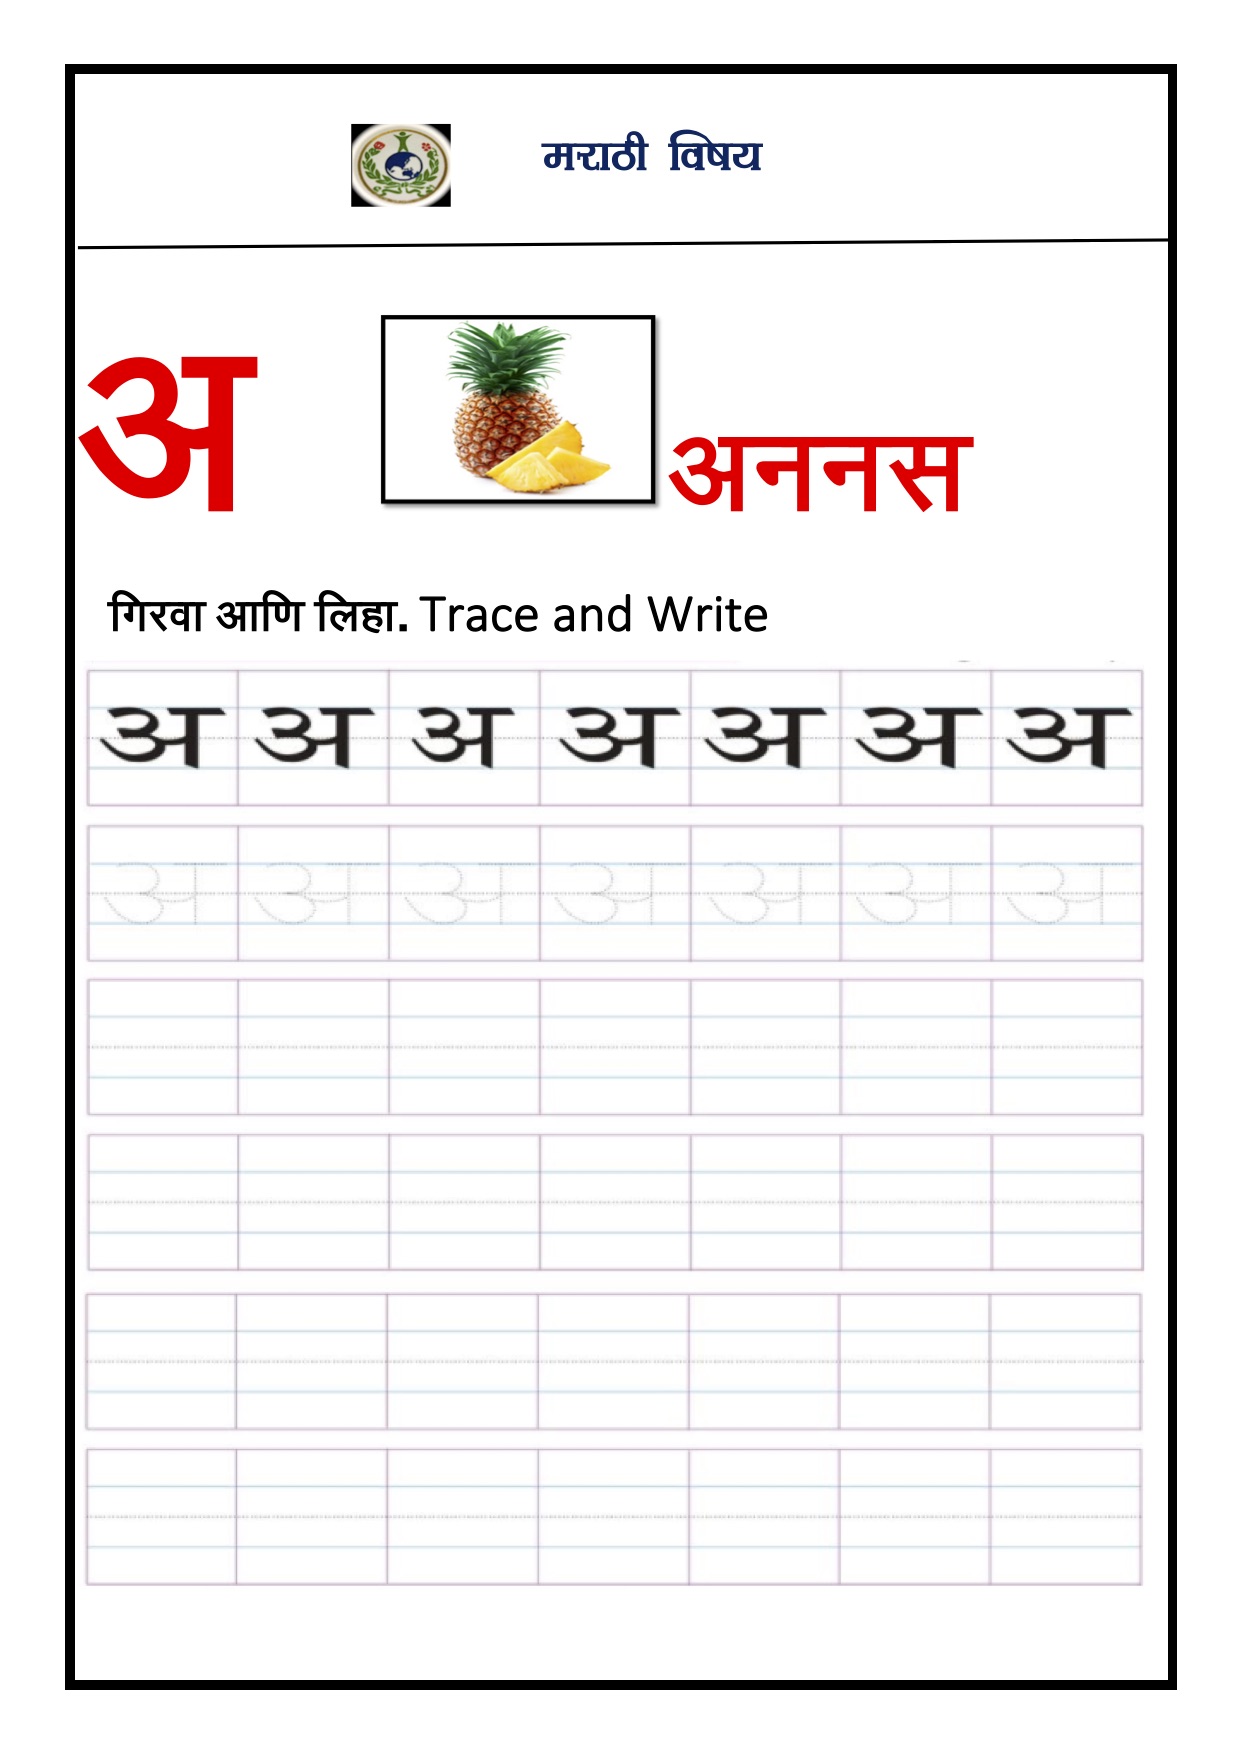 marathi-worksheets-worksheet